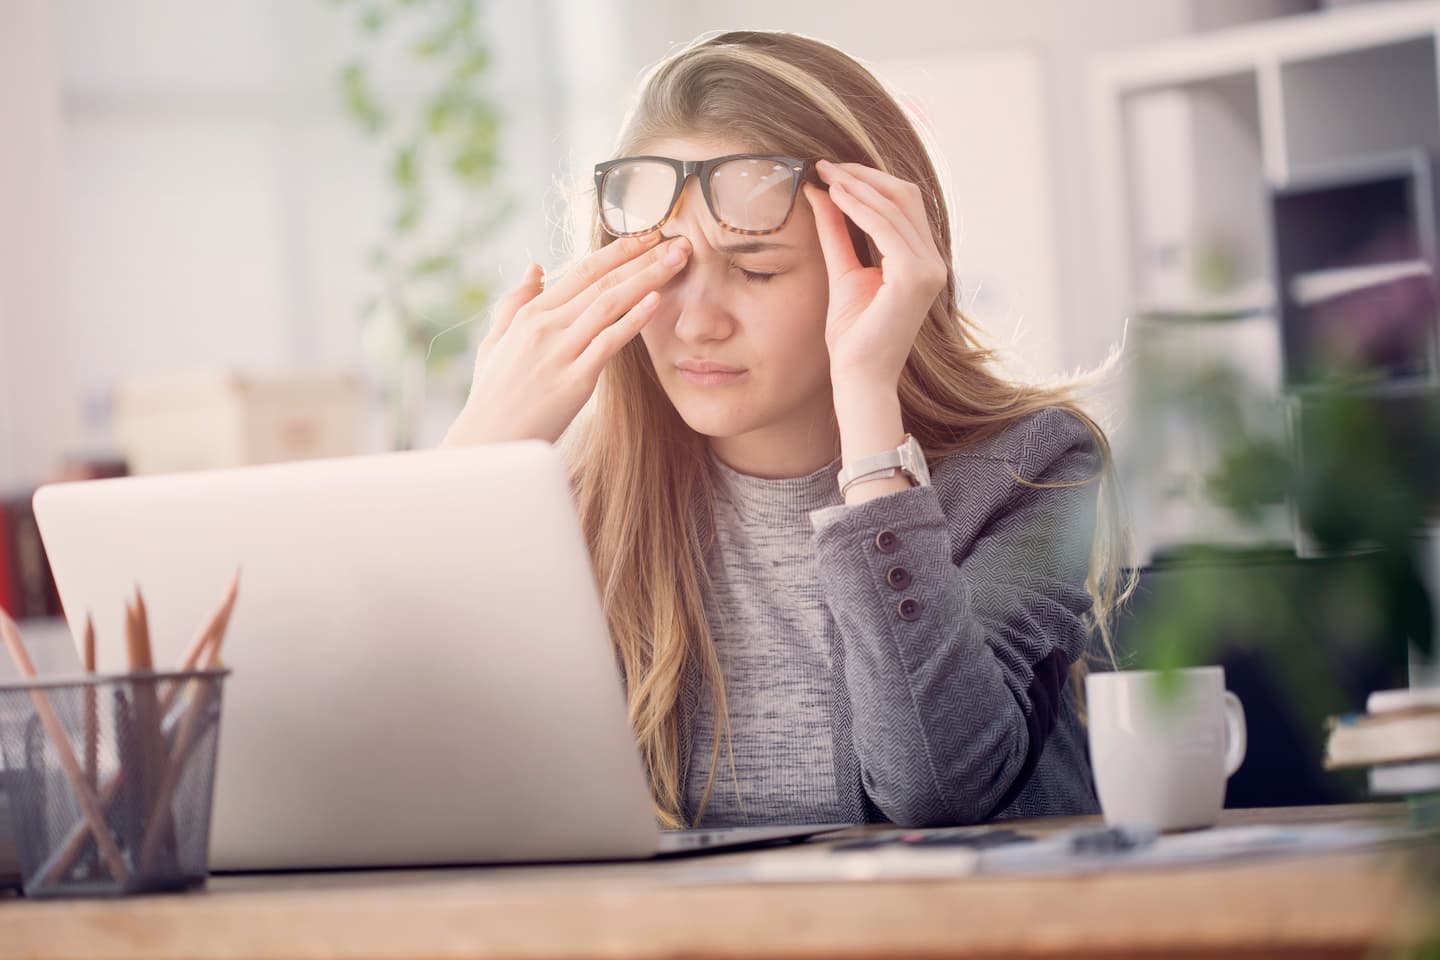 Frau reibt sich Augen unter Brille vor Laptop am Schreibtisch